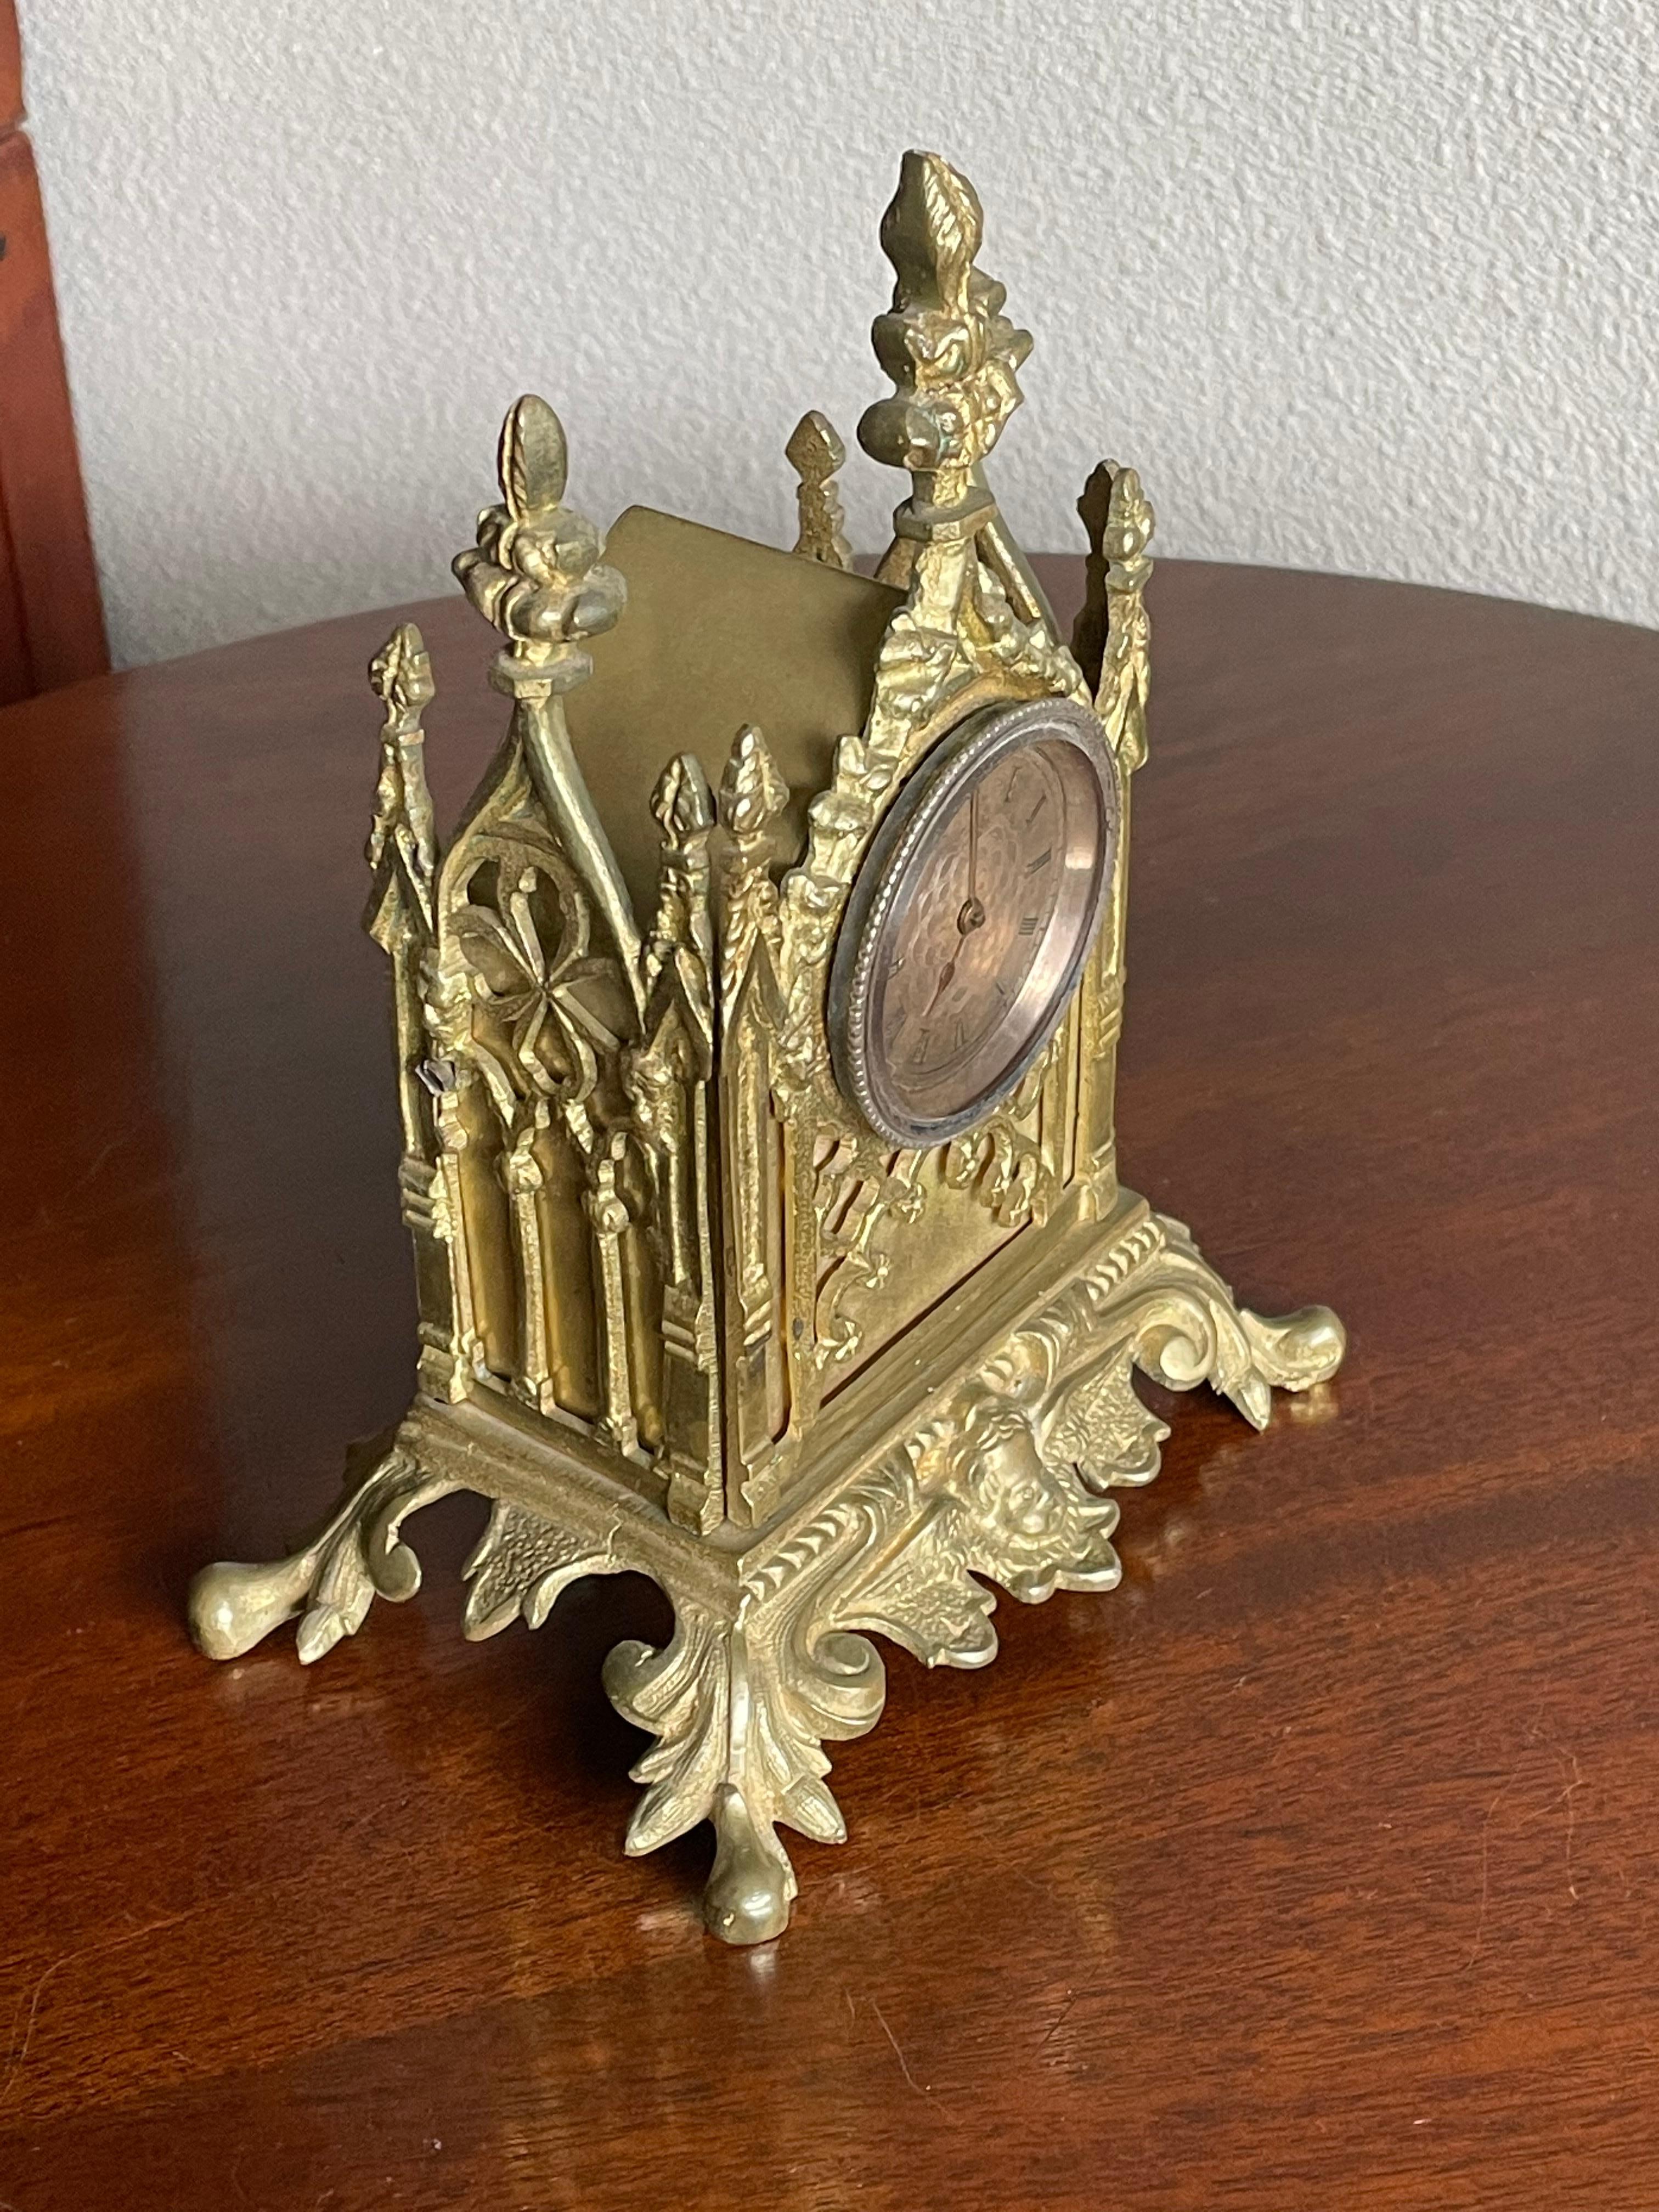 Kleine gotische Tischuhr mit vergoldeter (oder möglicherweise goldener) Taschenuhr von John Worboys aus London, 1780-1810.

Wir wissen zu wenig über antike Taschenuhren, um Ihnen sagen zu können, ob die Taschenuhr in dieser einzigartigen